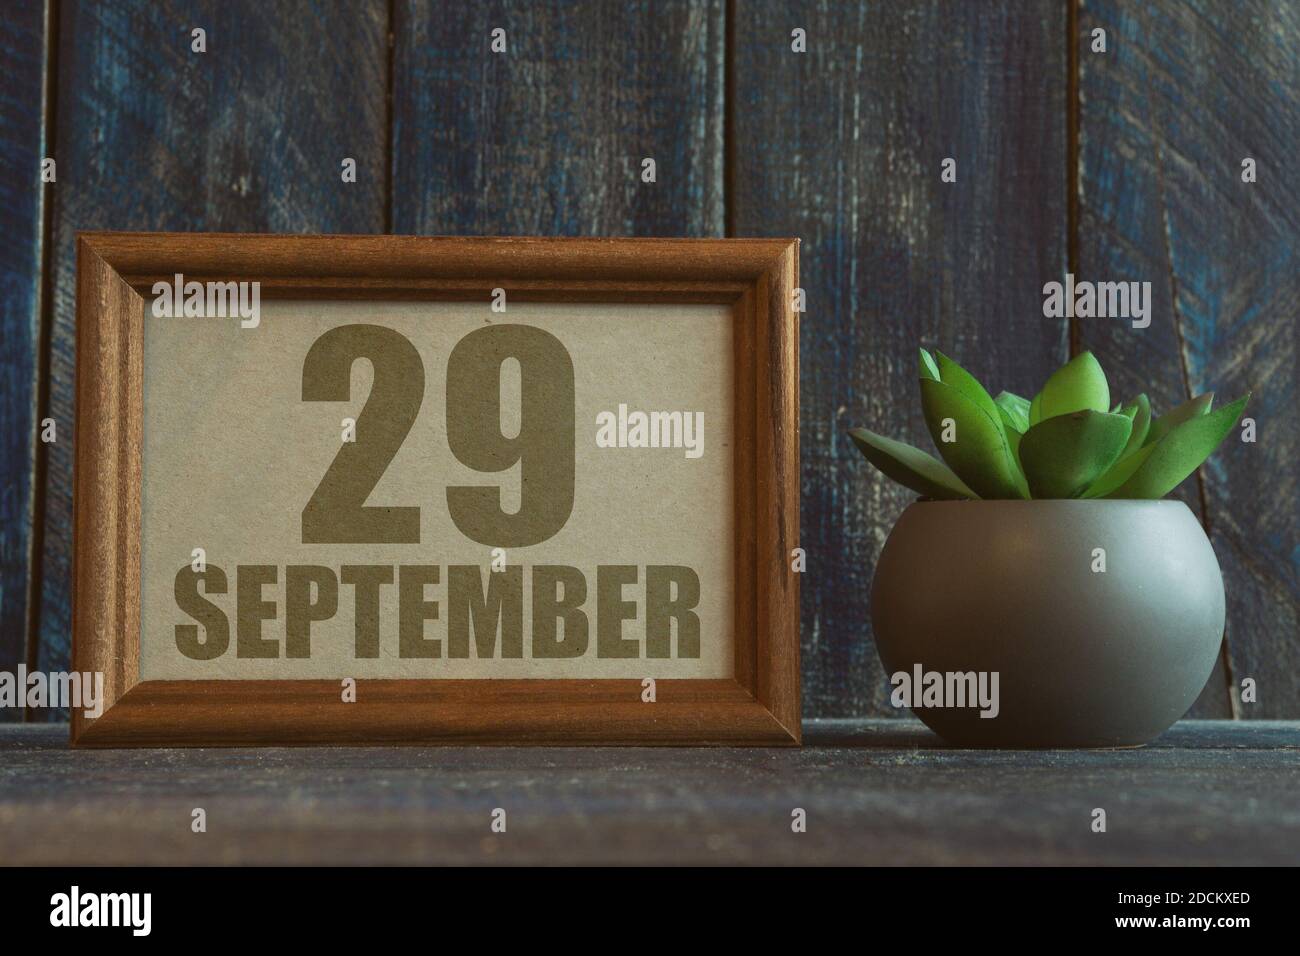 september. Tag 29 des Monats, Datum im Rahmen neben Sukkulente auf Holzhintergrund Herbstmonat, Tag des Jahres Konzept Stockfoto